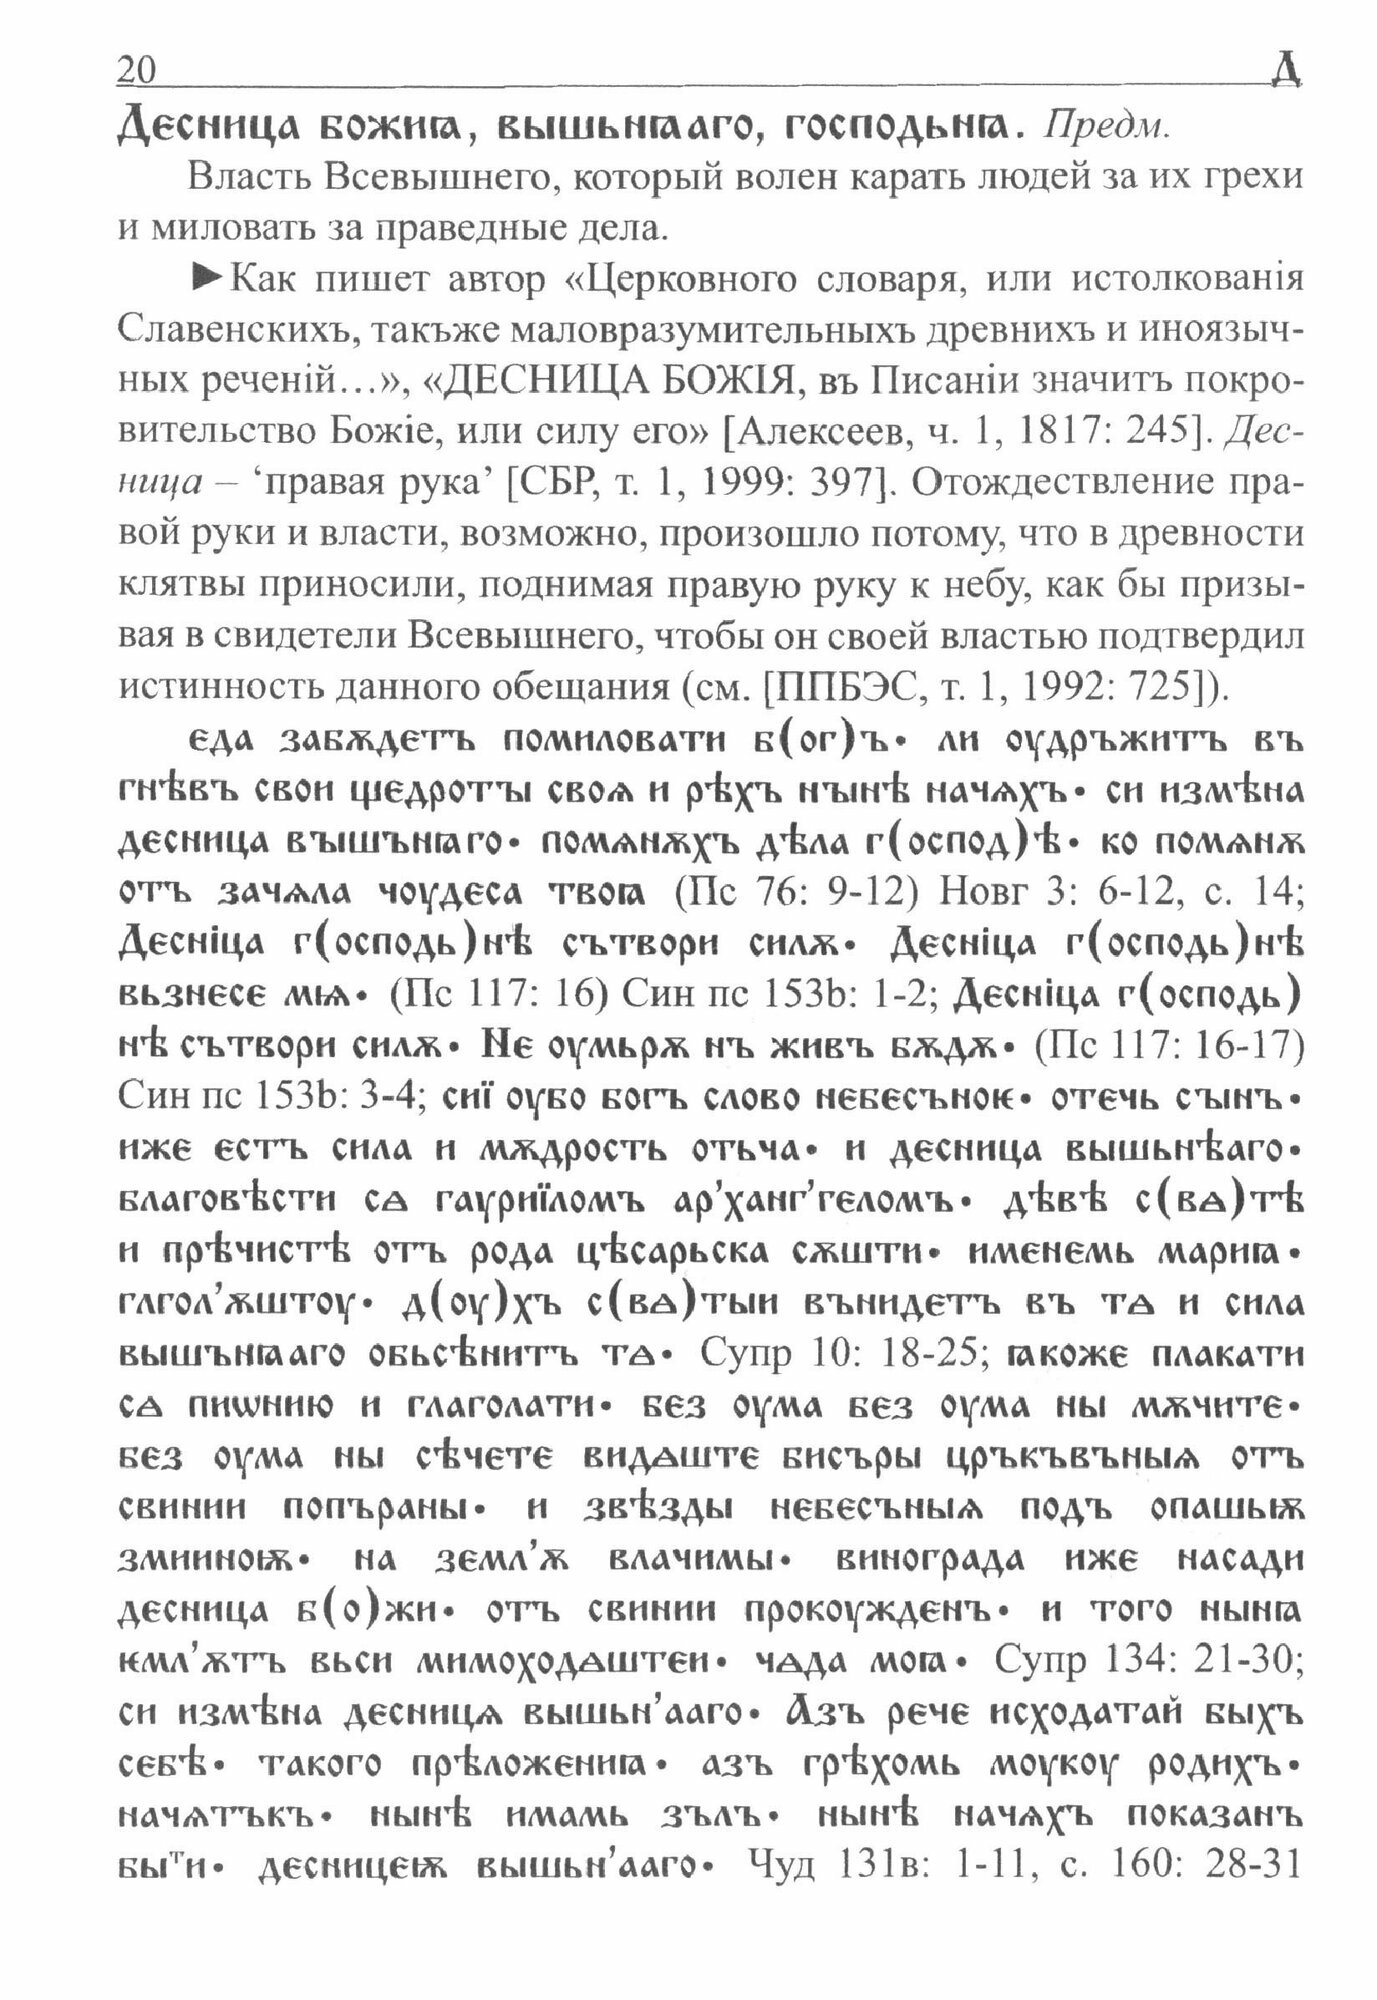 Большой фразеологический словарь старославянского языка. Том 3 - фото №2